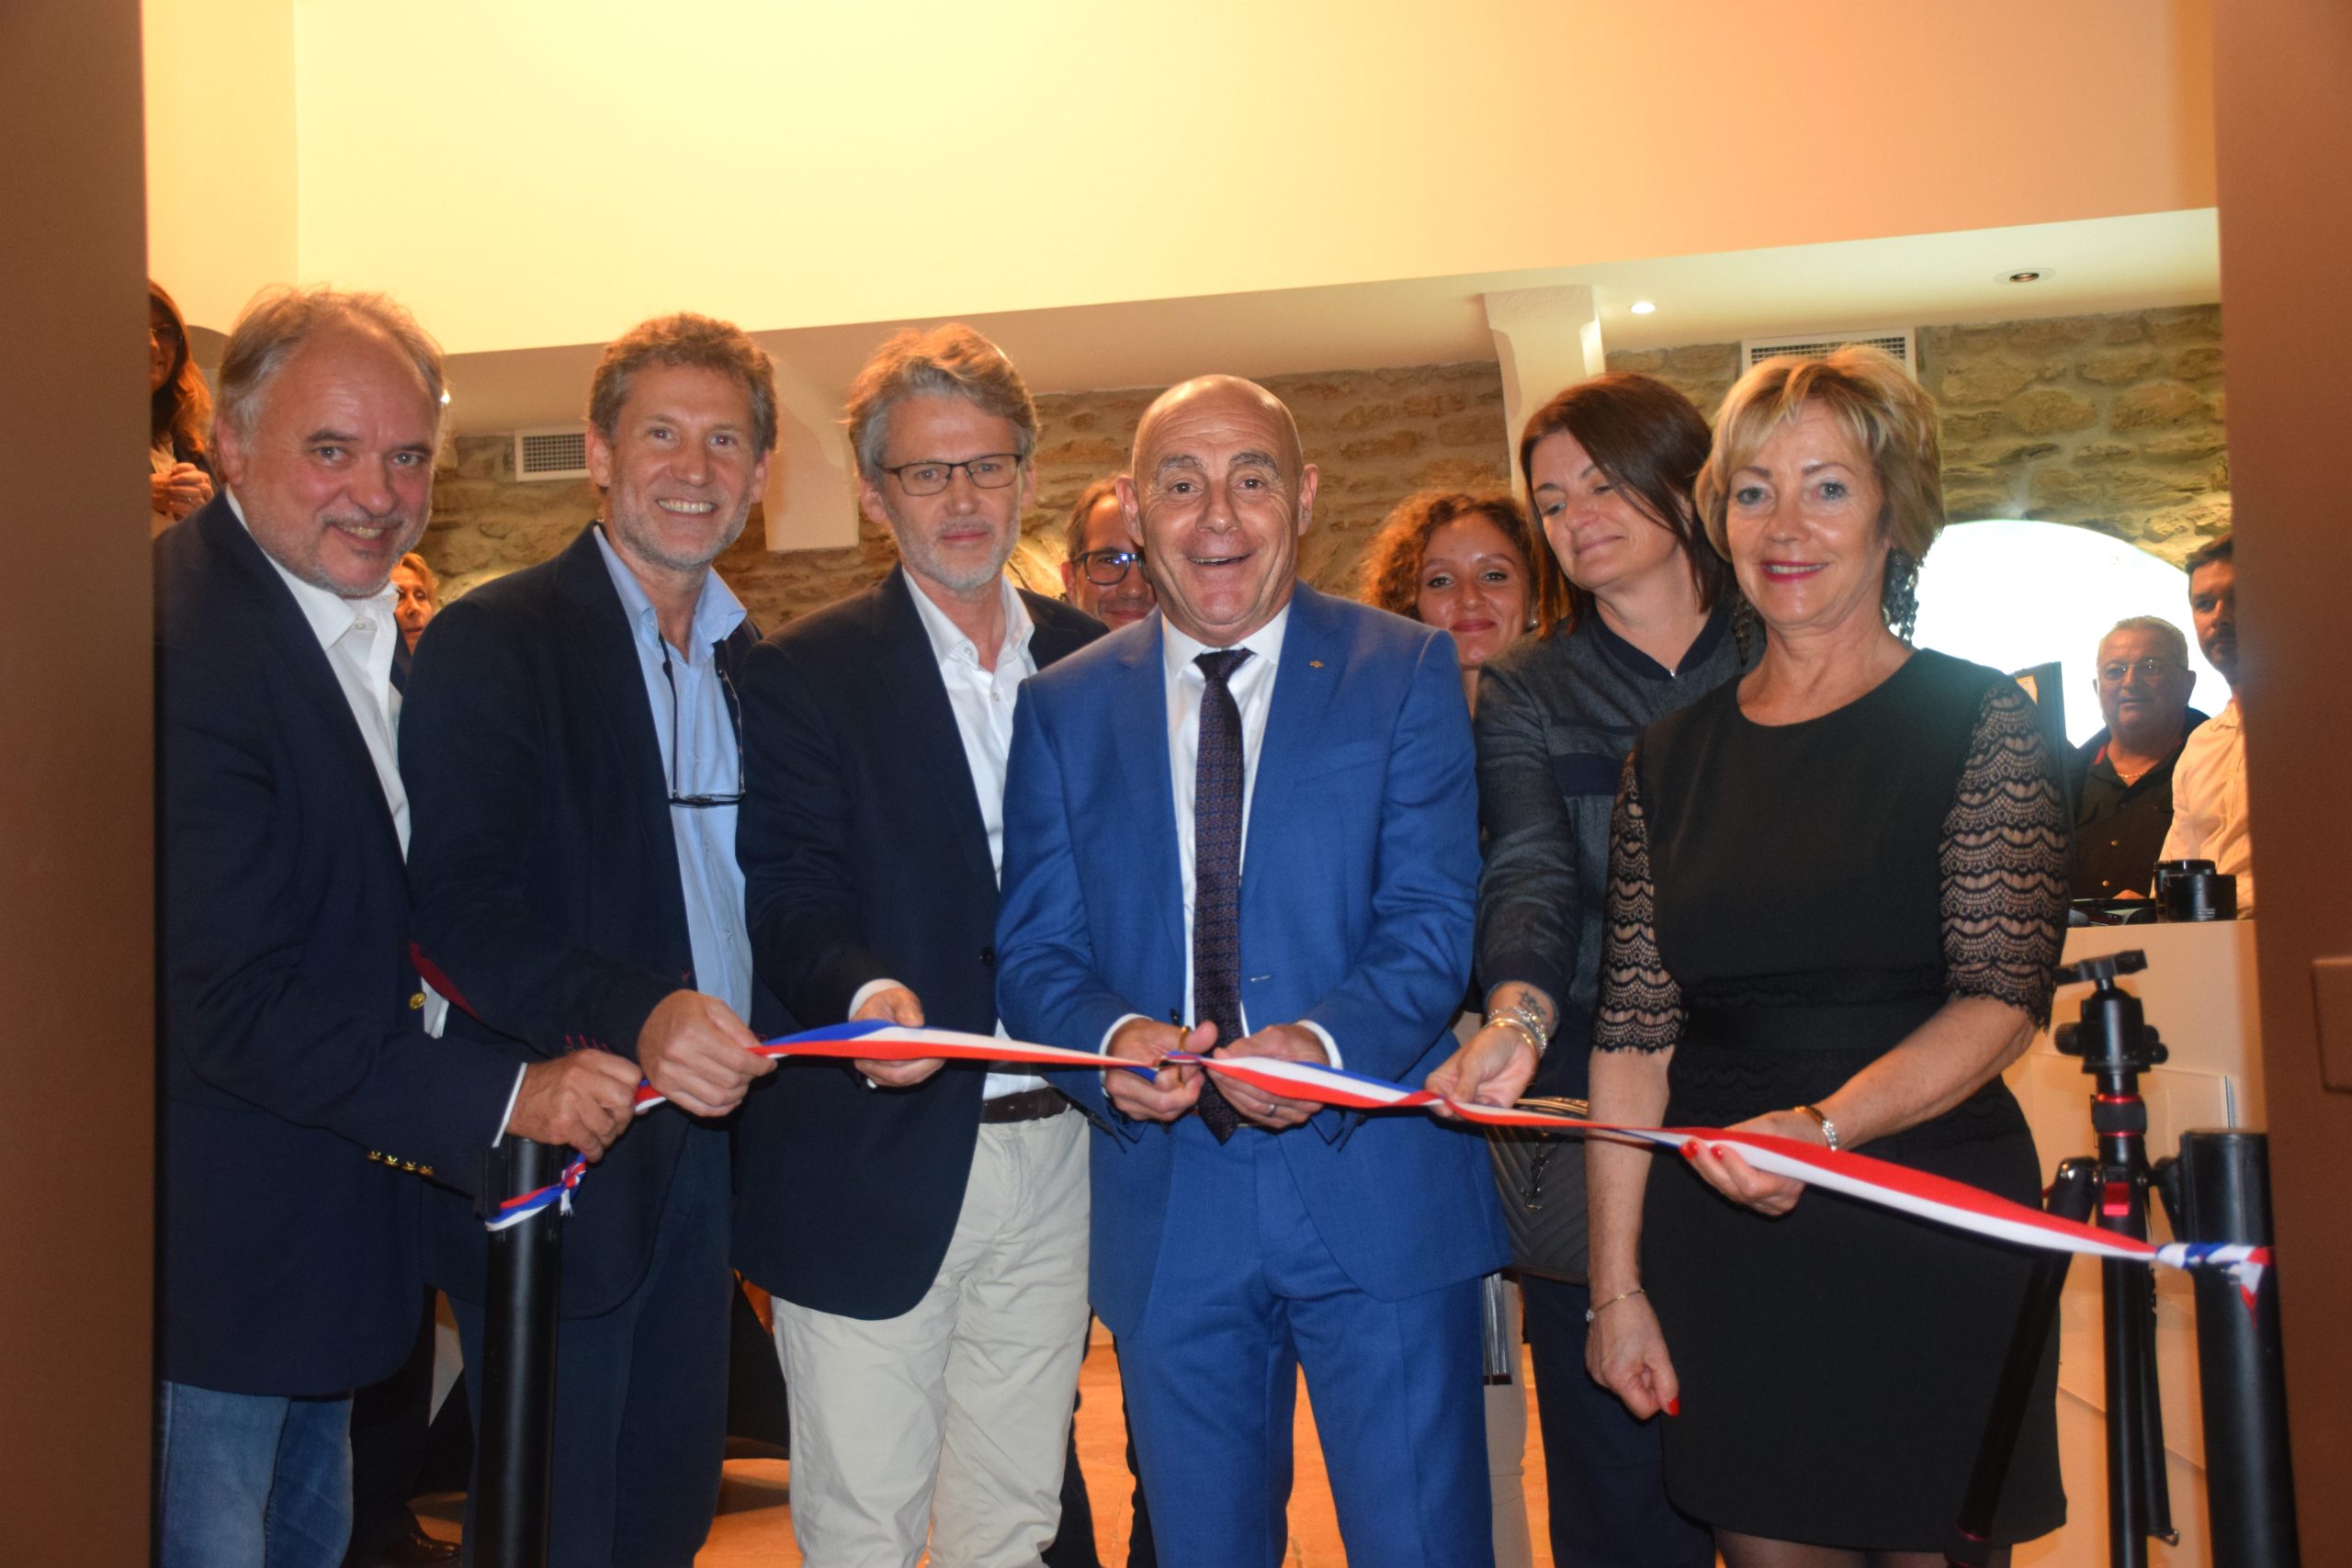 Inauguration du MHAB-Musée d’Histoire et d’Art de Bormes les Mimosas